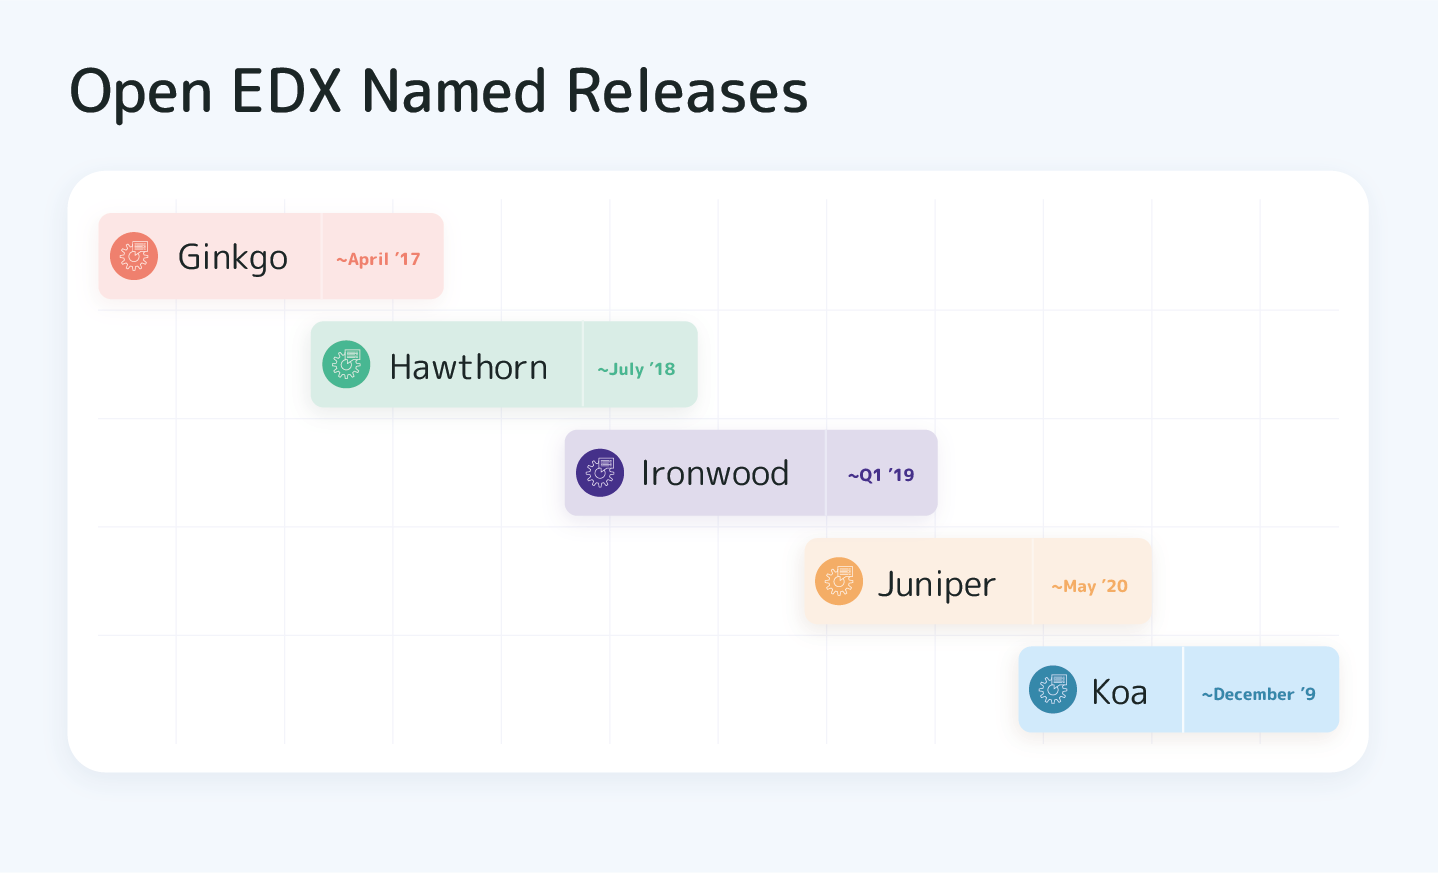 Open EDX Koa Releases